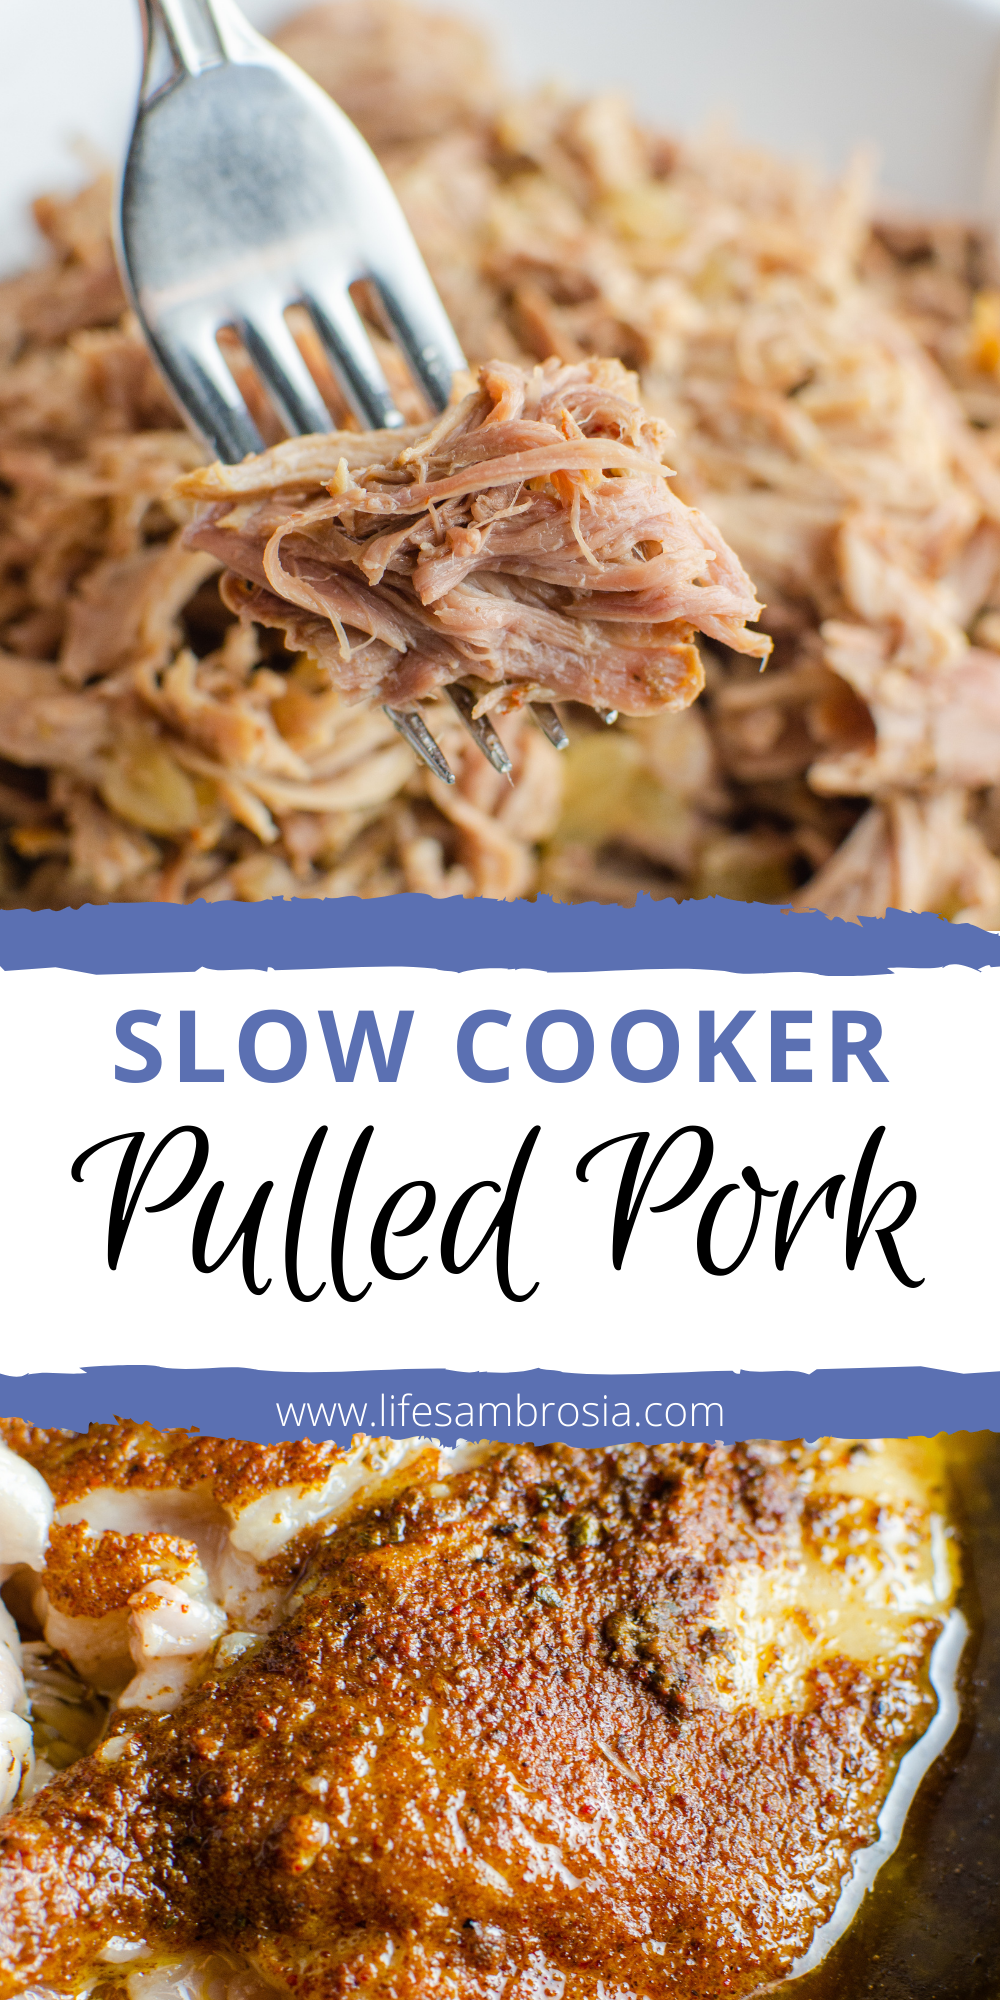 Best Slow Cooker Pulled Pork | Crock Pot Pulled Pork | Life's Ambrosia